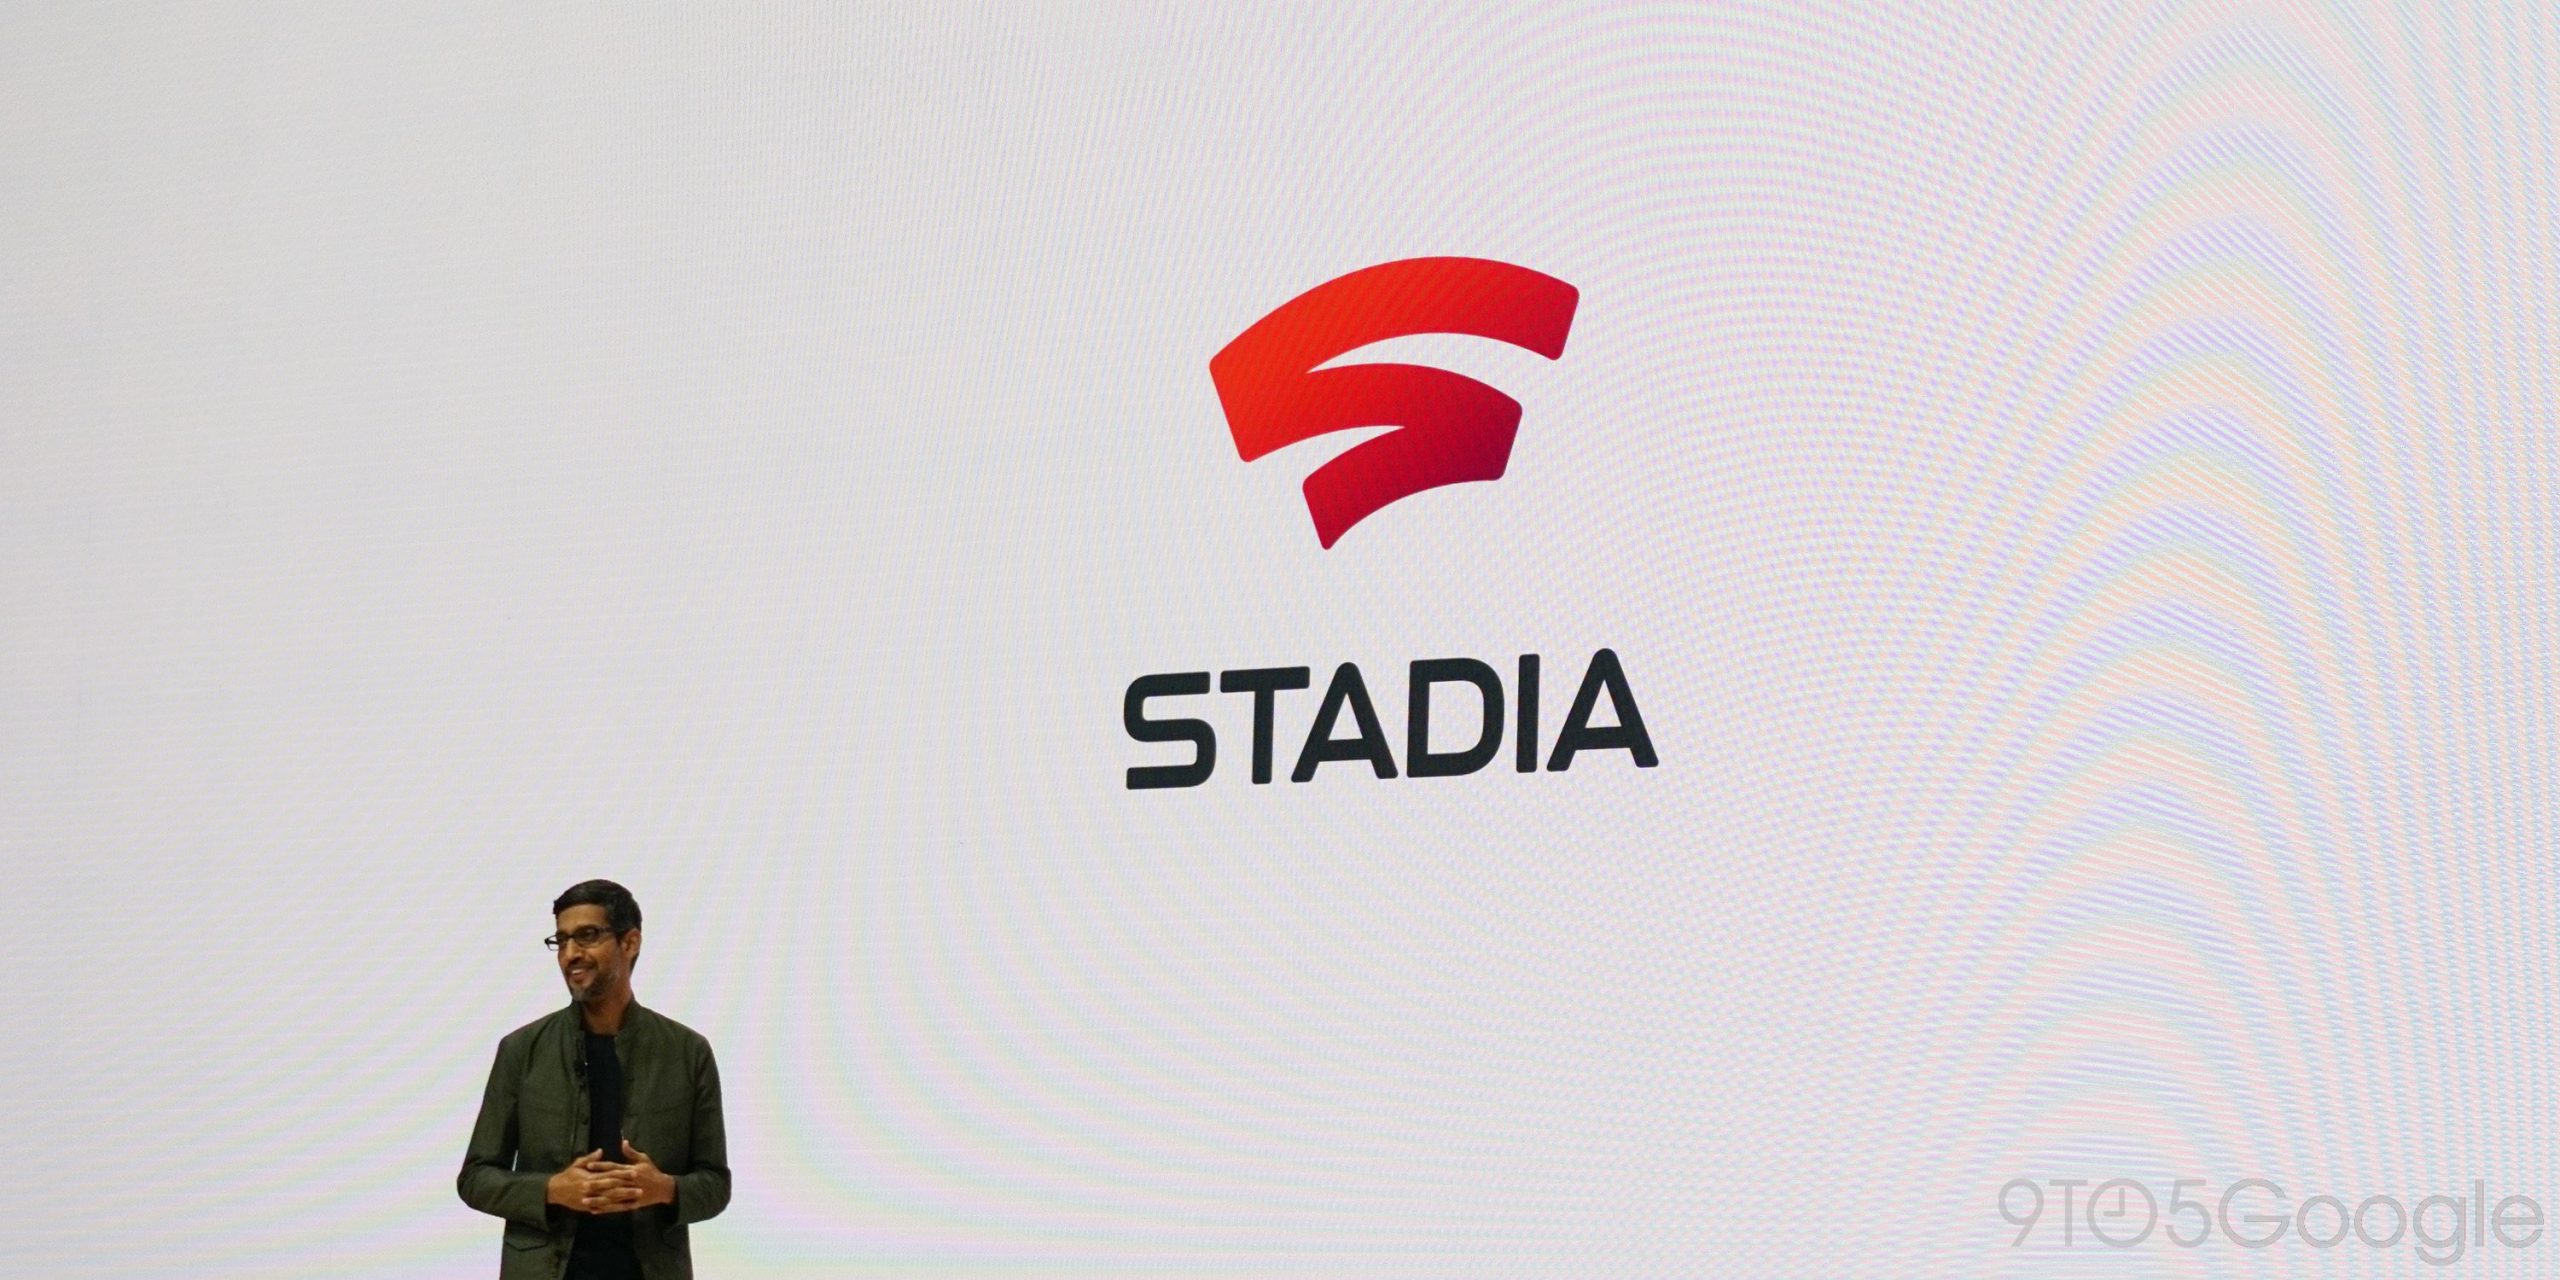 Google hospedando o próximo Stadia Connect em 8/ 19 antes da Gamescom